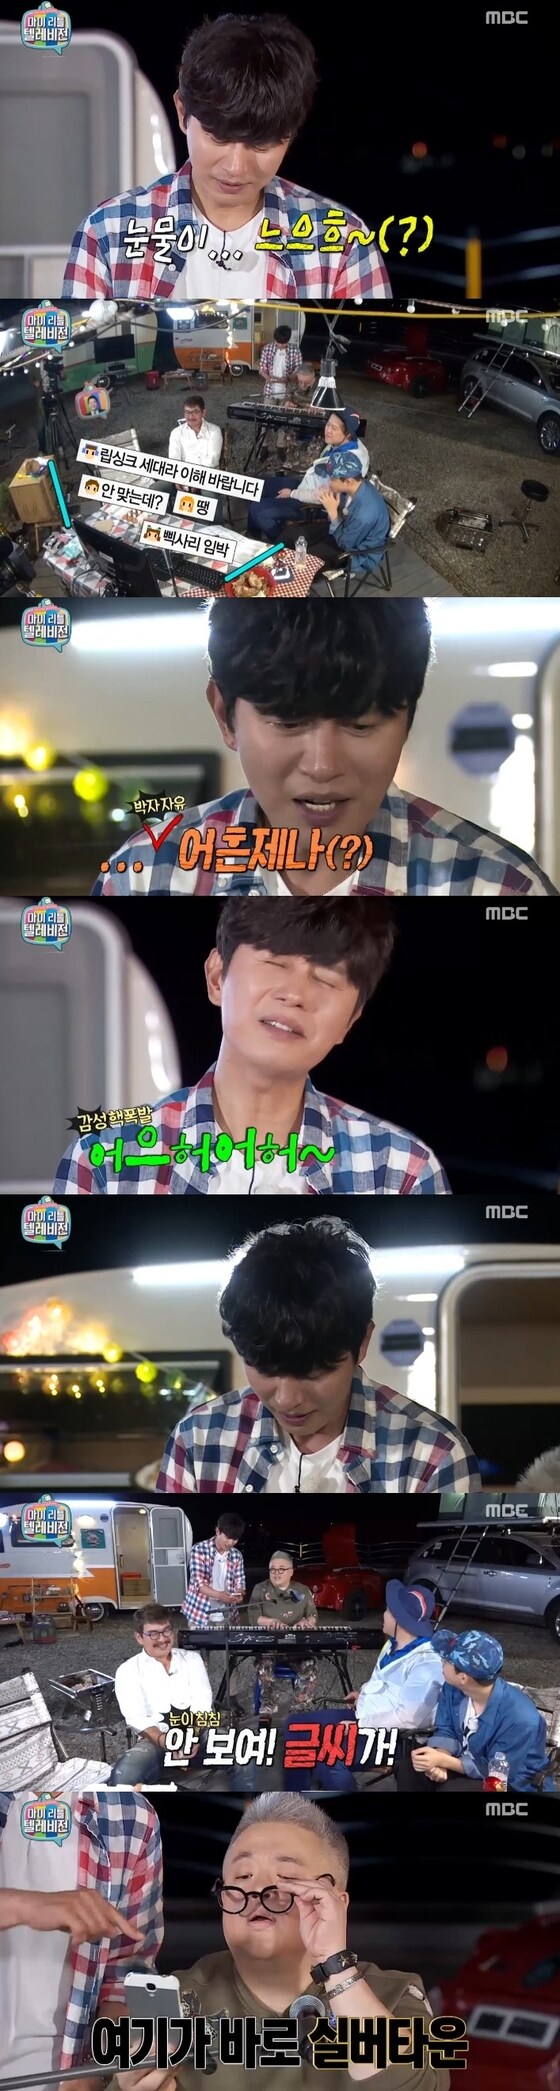 27일 밤 11시15분 MBC ´마이 리틀 텔레비전´이 방송됐다. © 뉴스1스포츠 / MBC ´마이 리틀 텔레비전´ 캡처